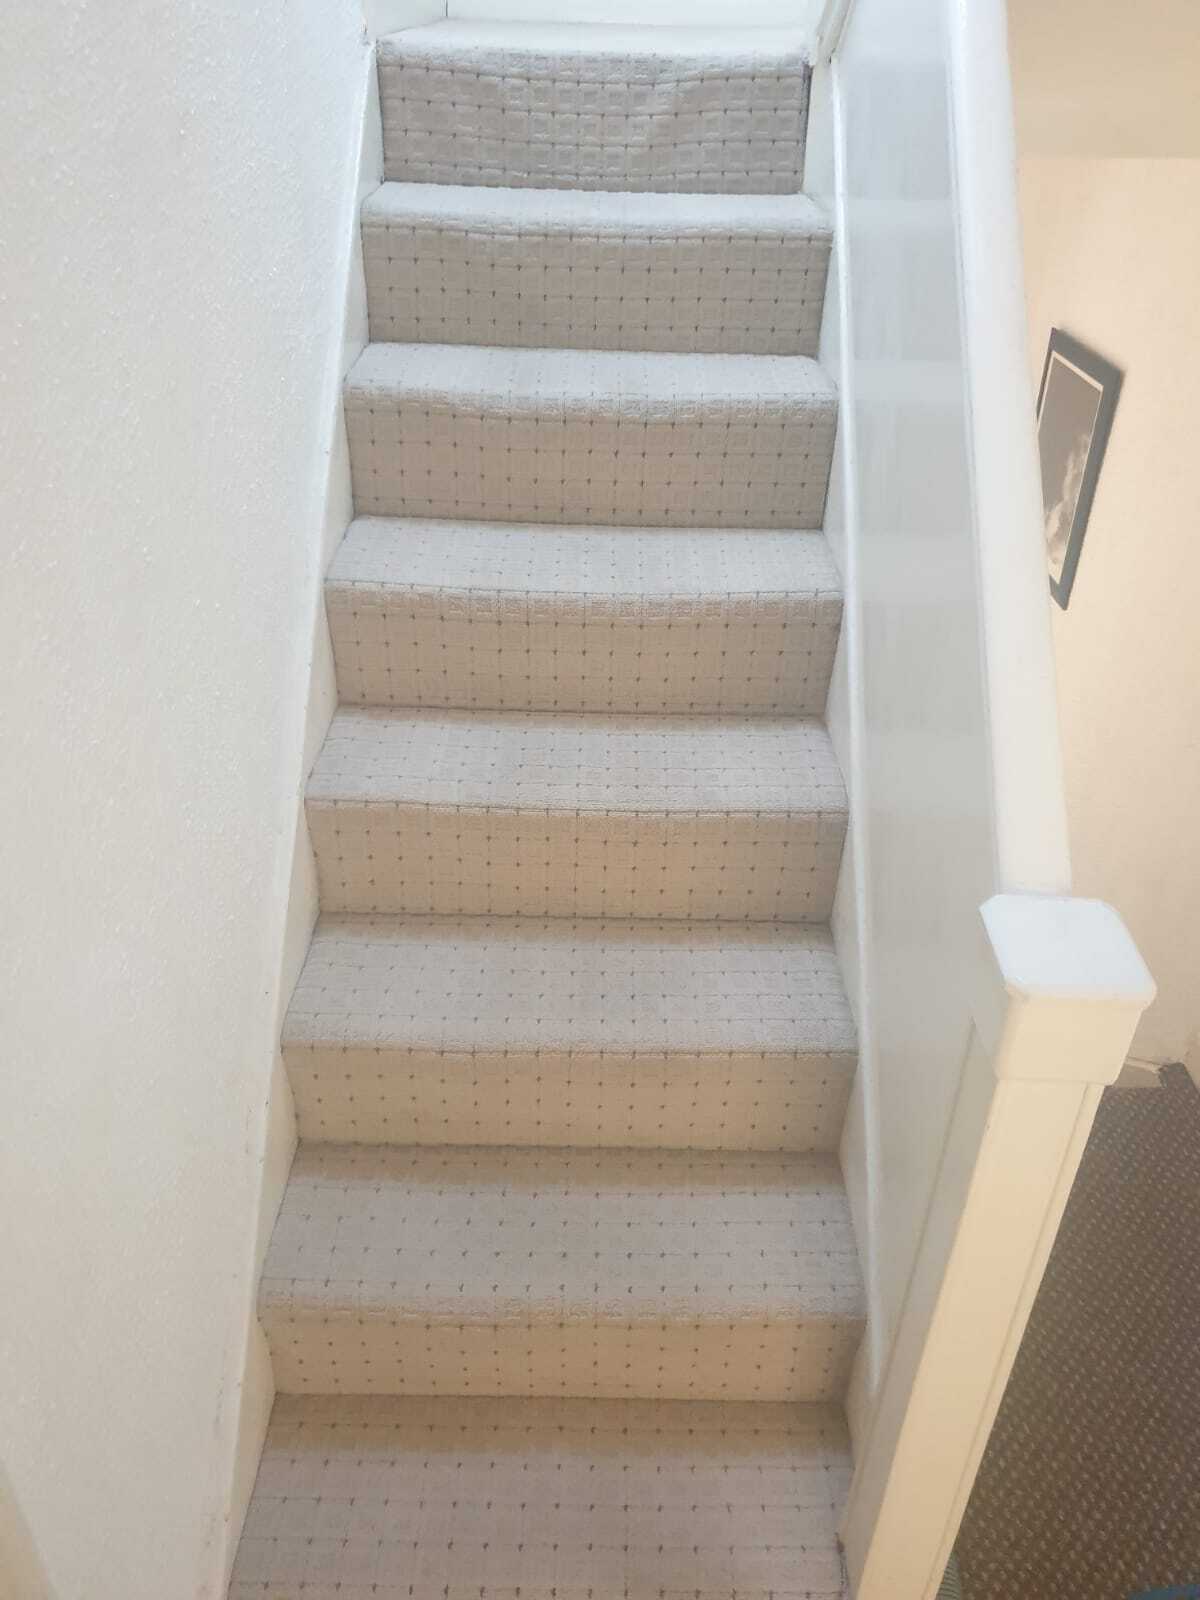 Clean stairway